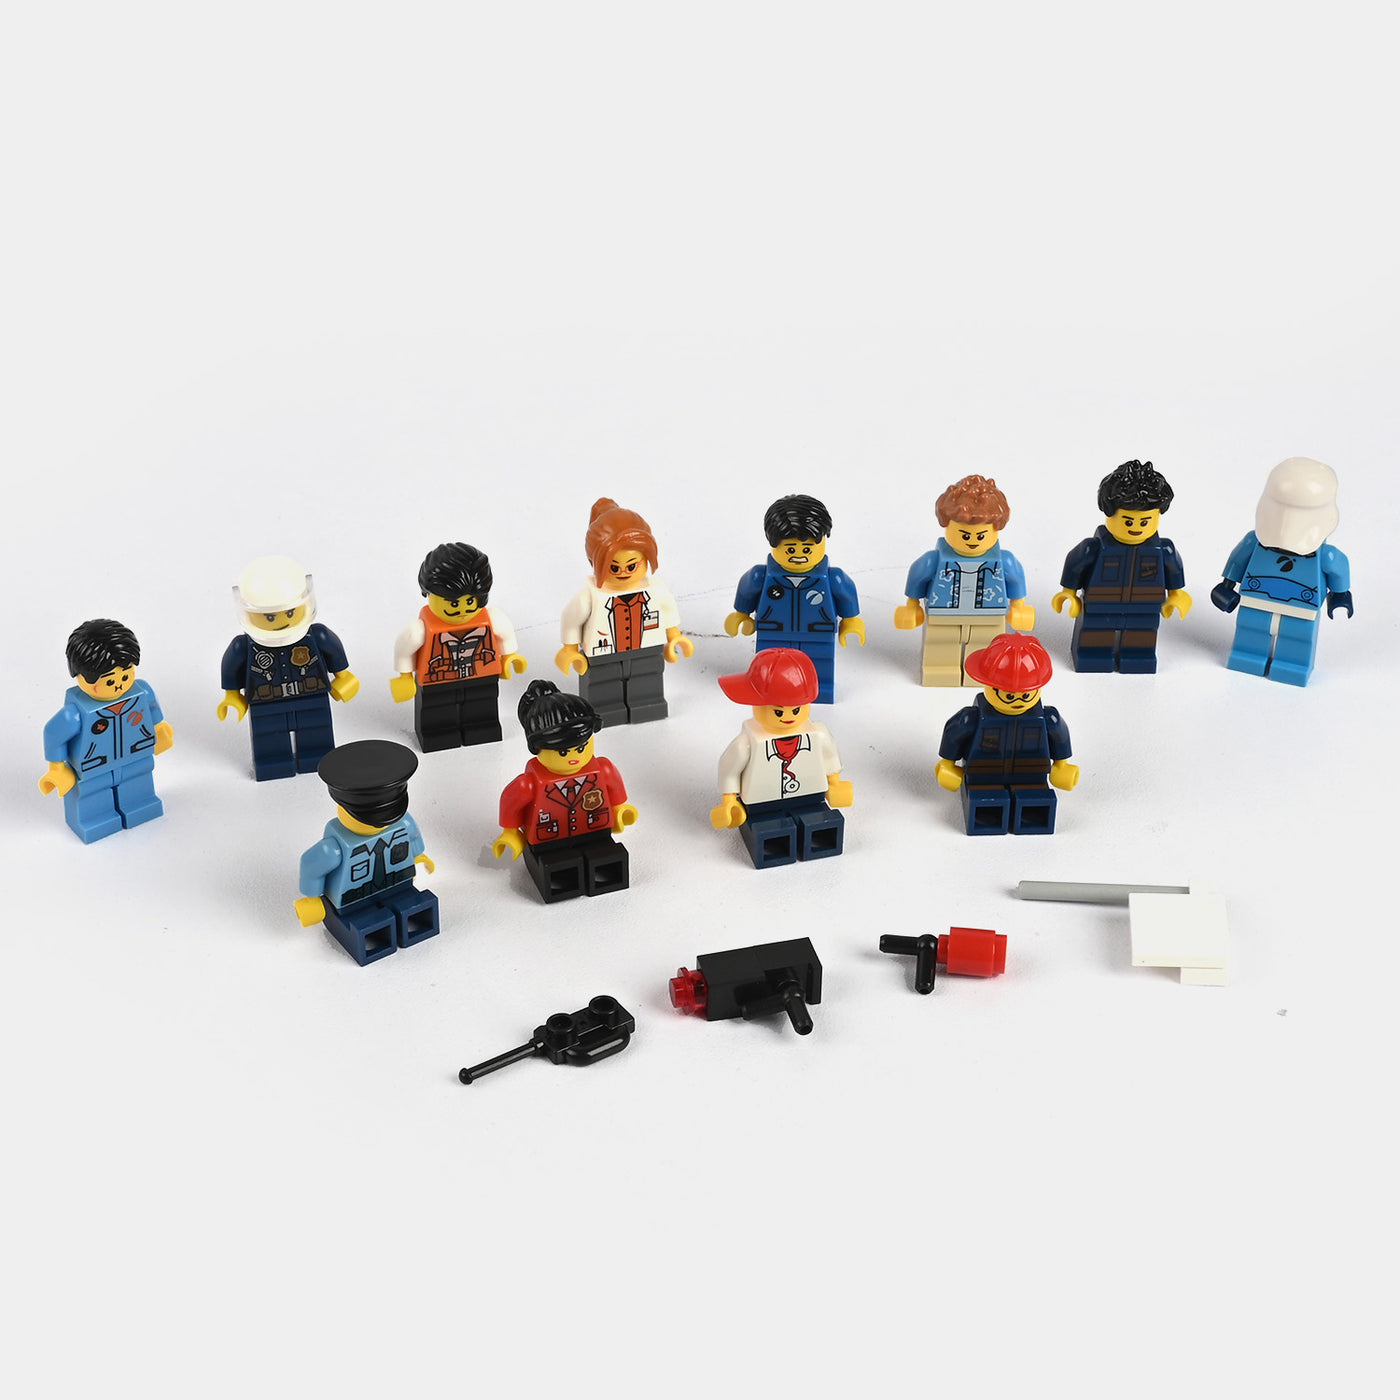 Mini Figures Toy Play Set | 12PCs